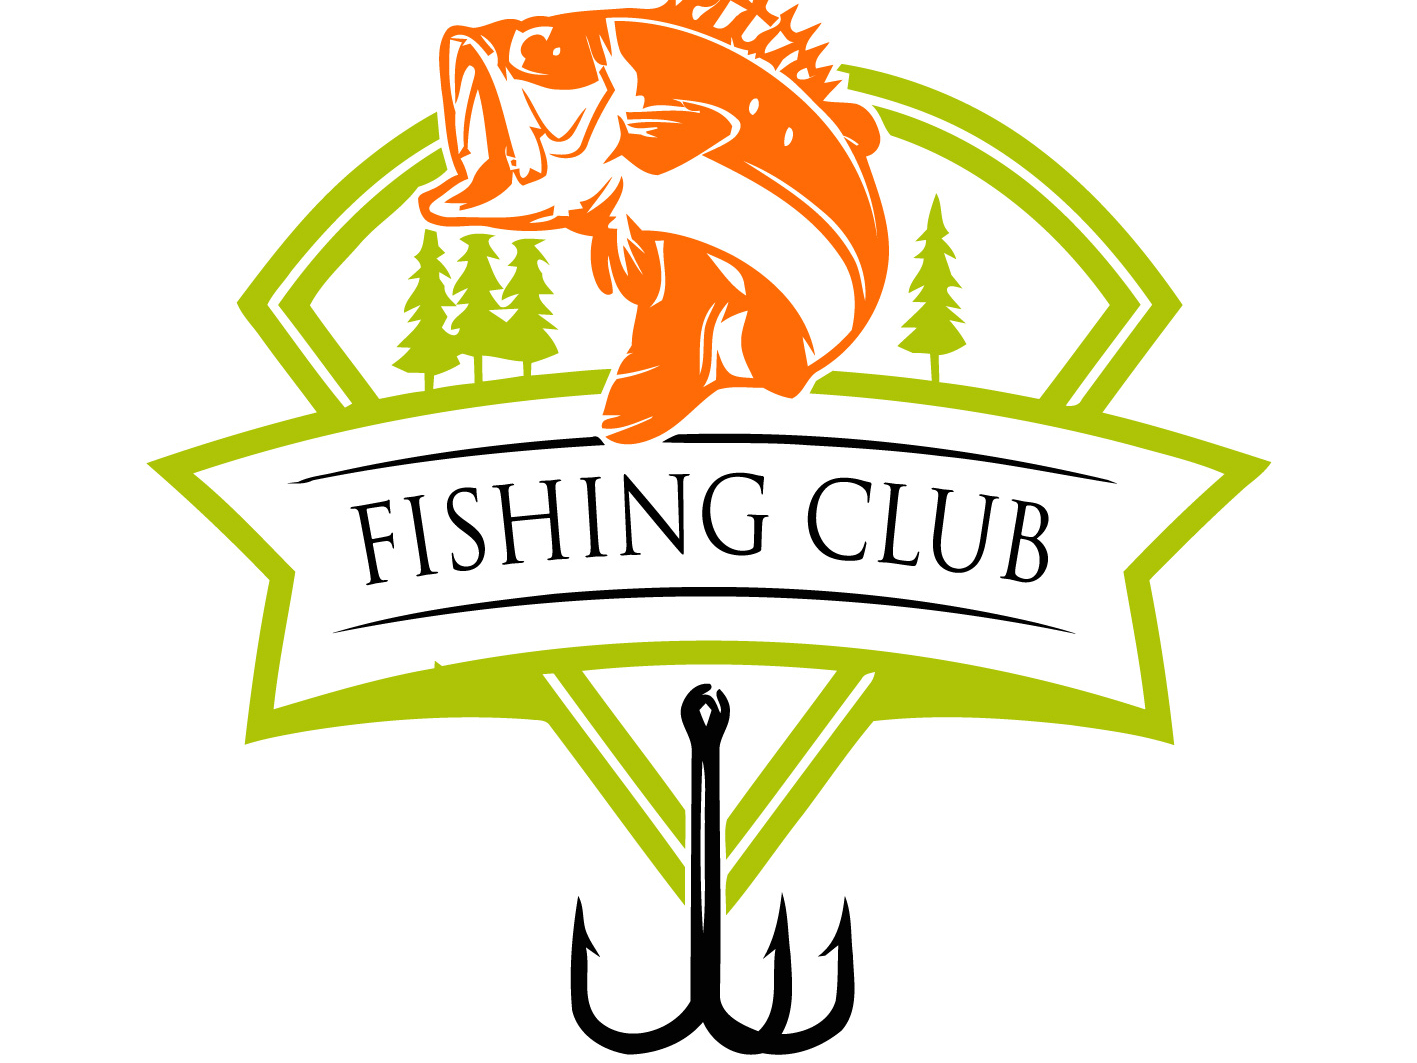 Fishing Club by Gwd Designs on Dribbble